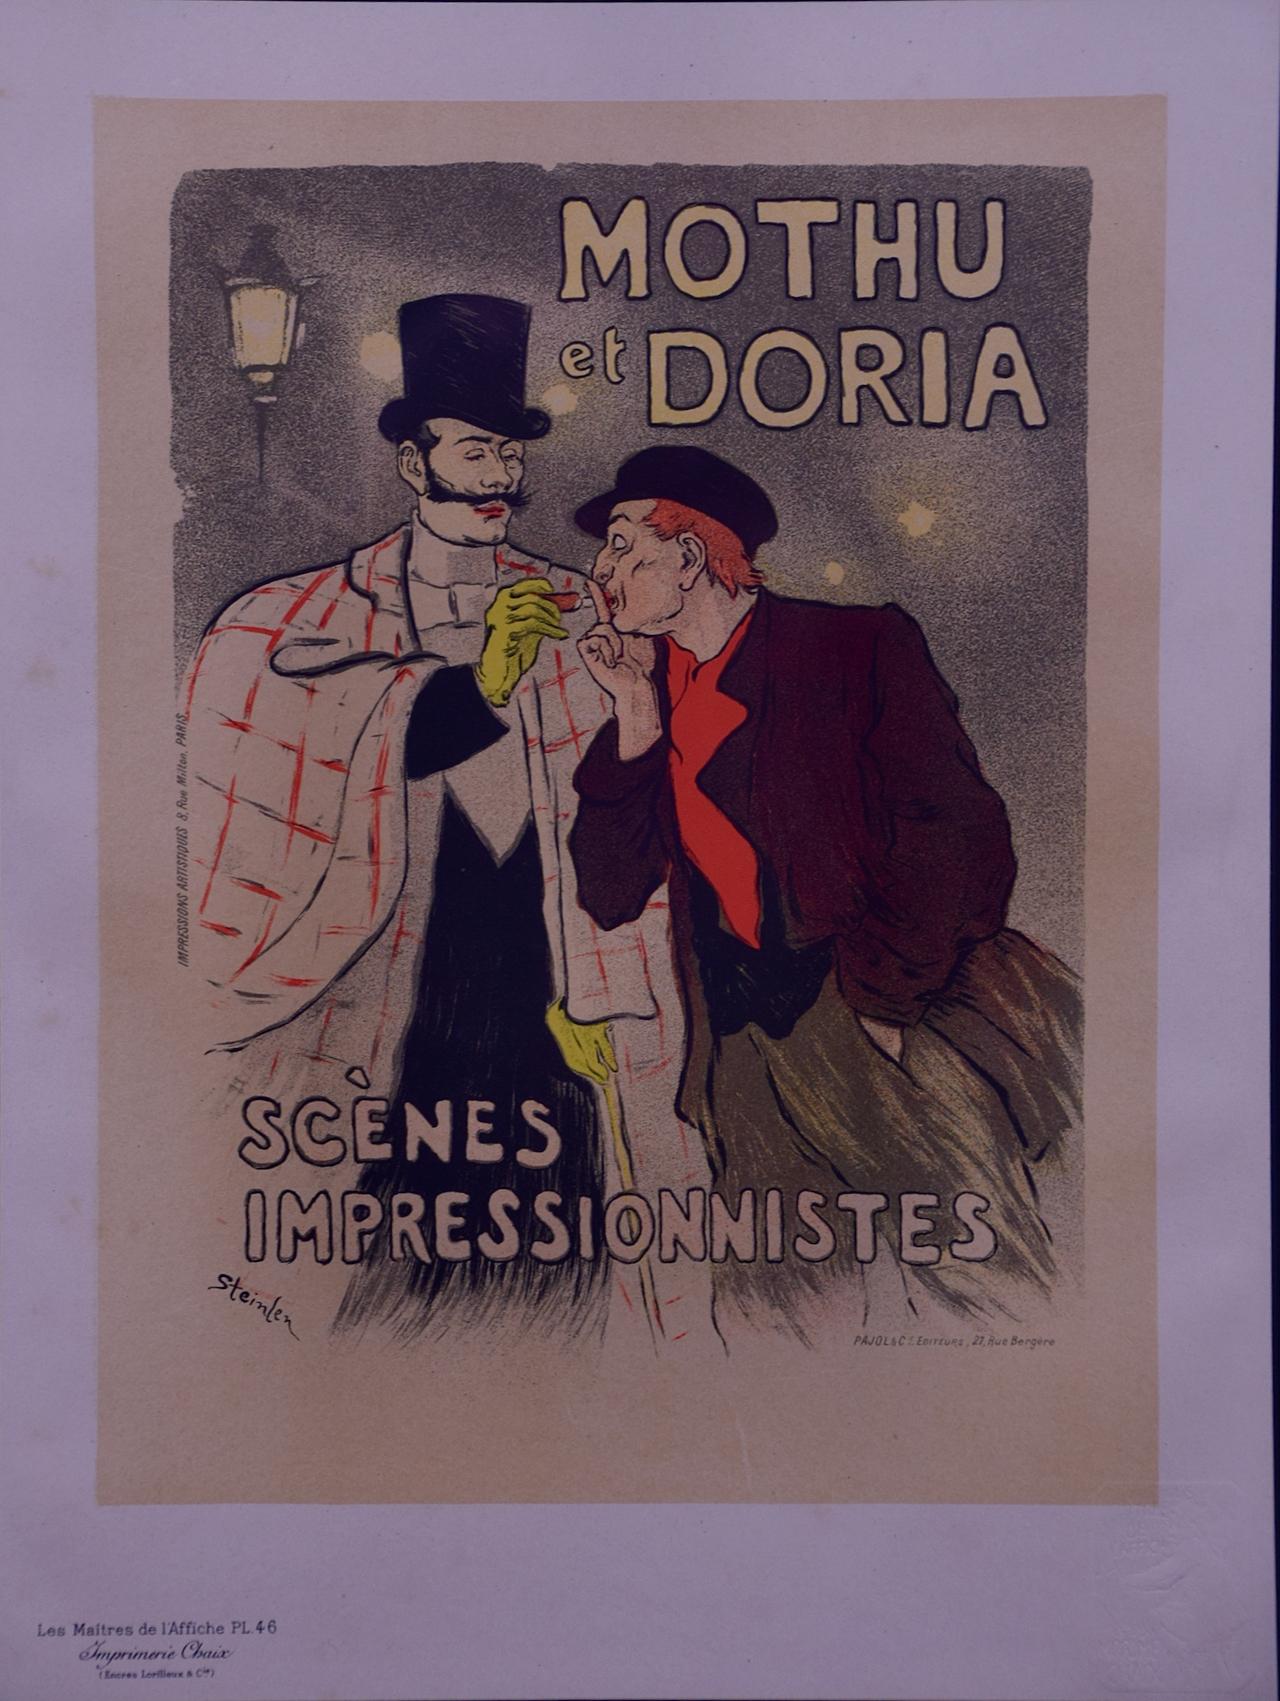 Mothu et Doria: A 19th C. Lithograph from Les Maitres de l'Affiche by Steinlen - Print by Théophile Alexandre Steinlen